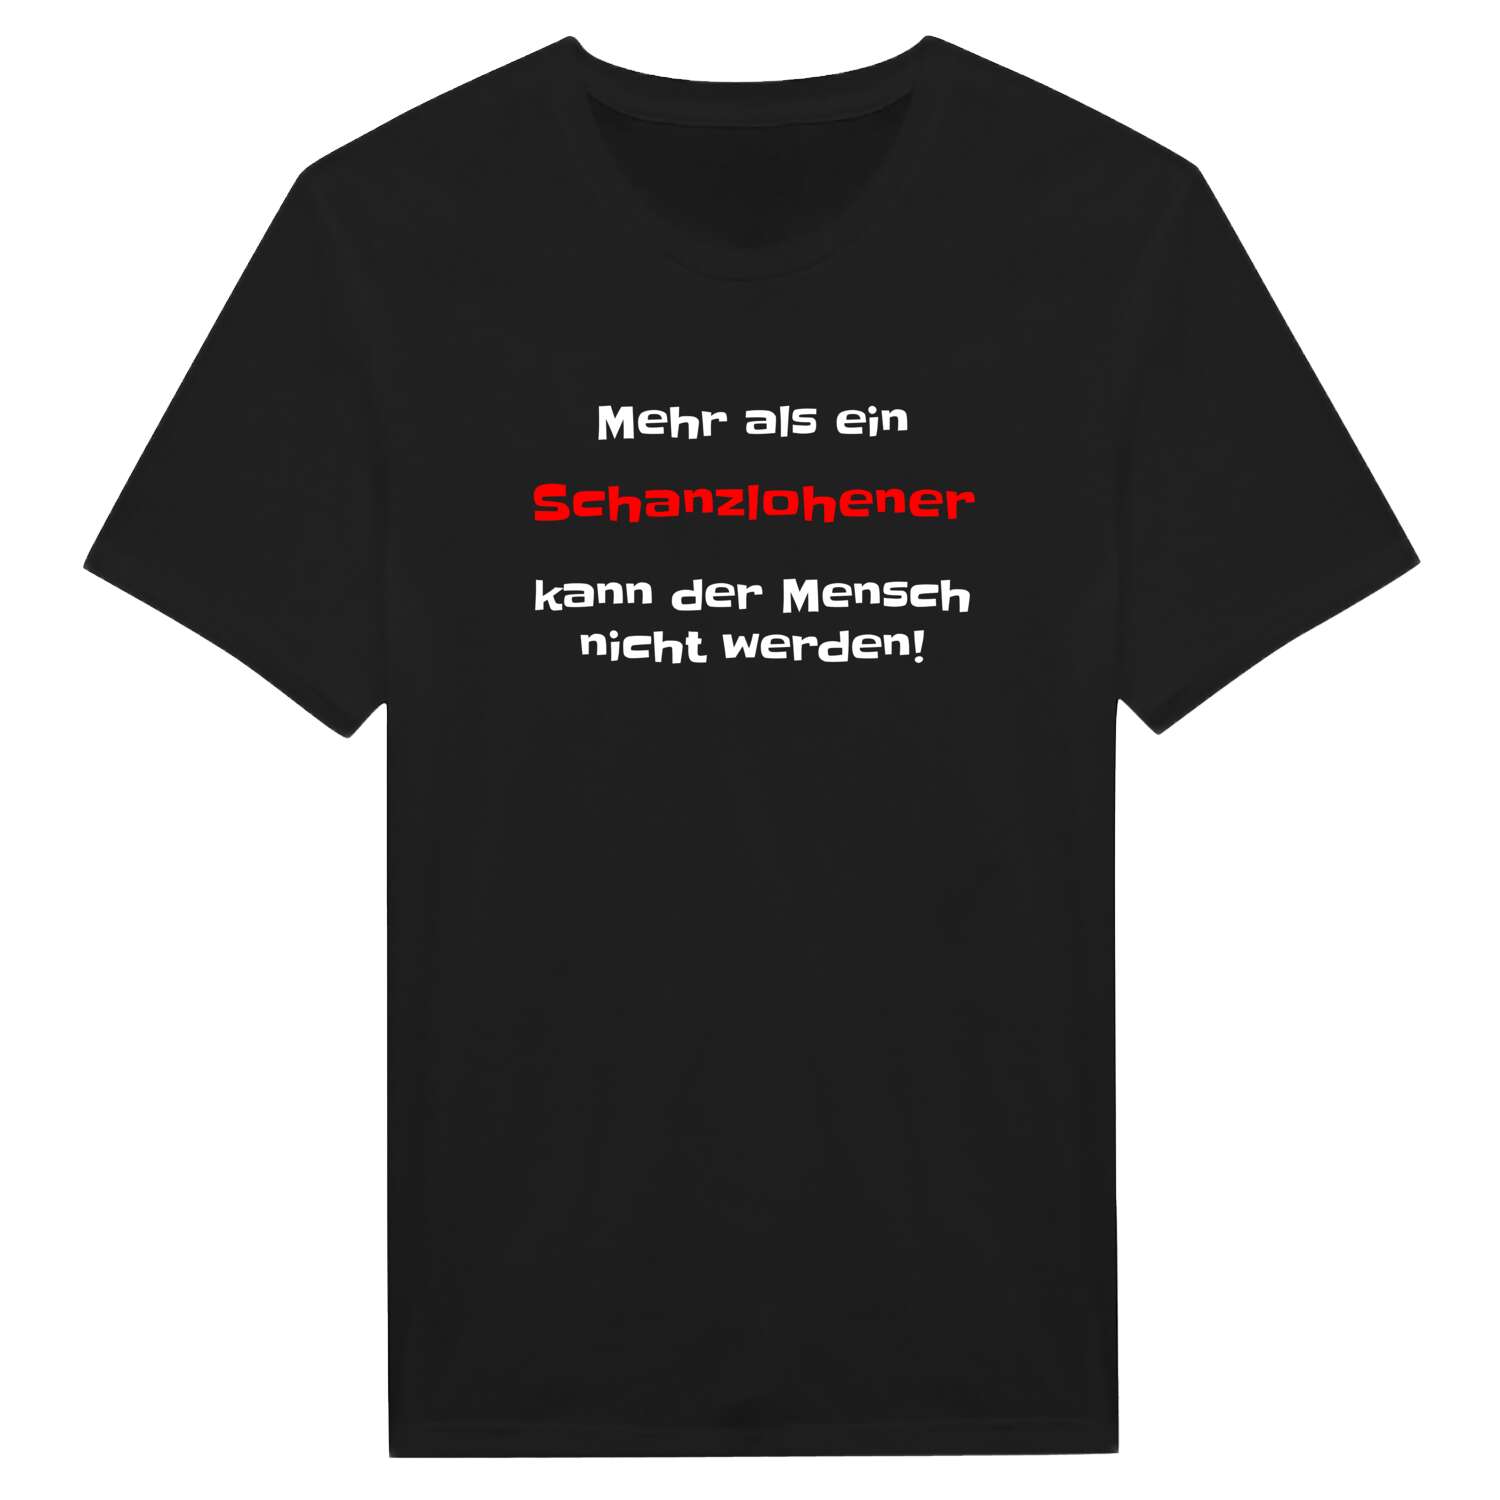 Schanzlohe T-Shirt »Mehr als ein«